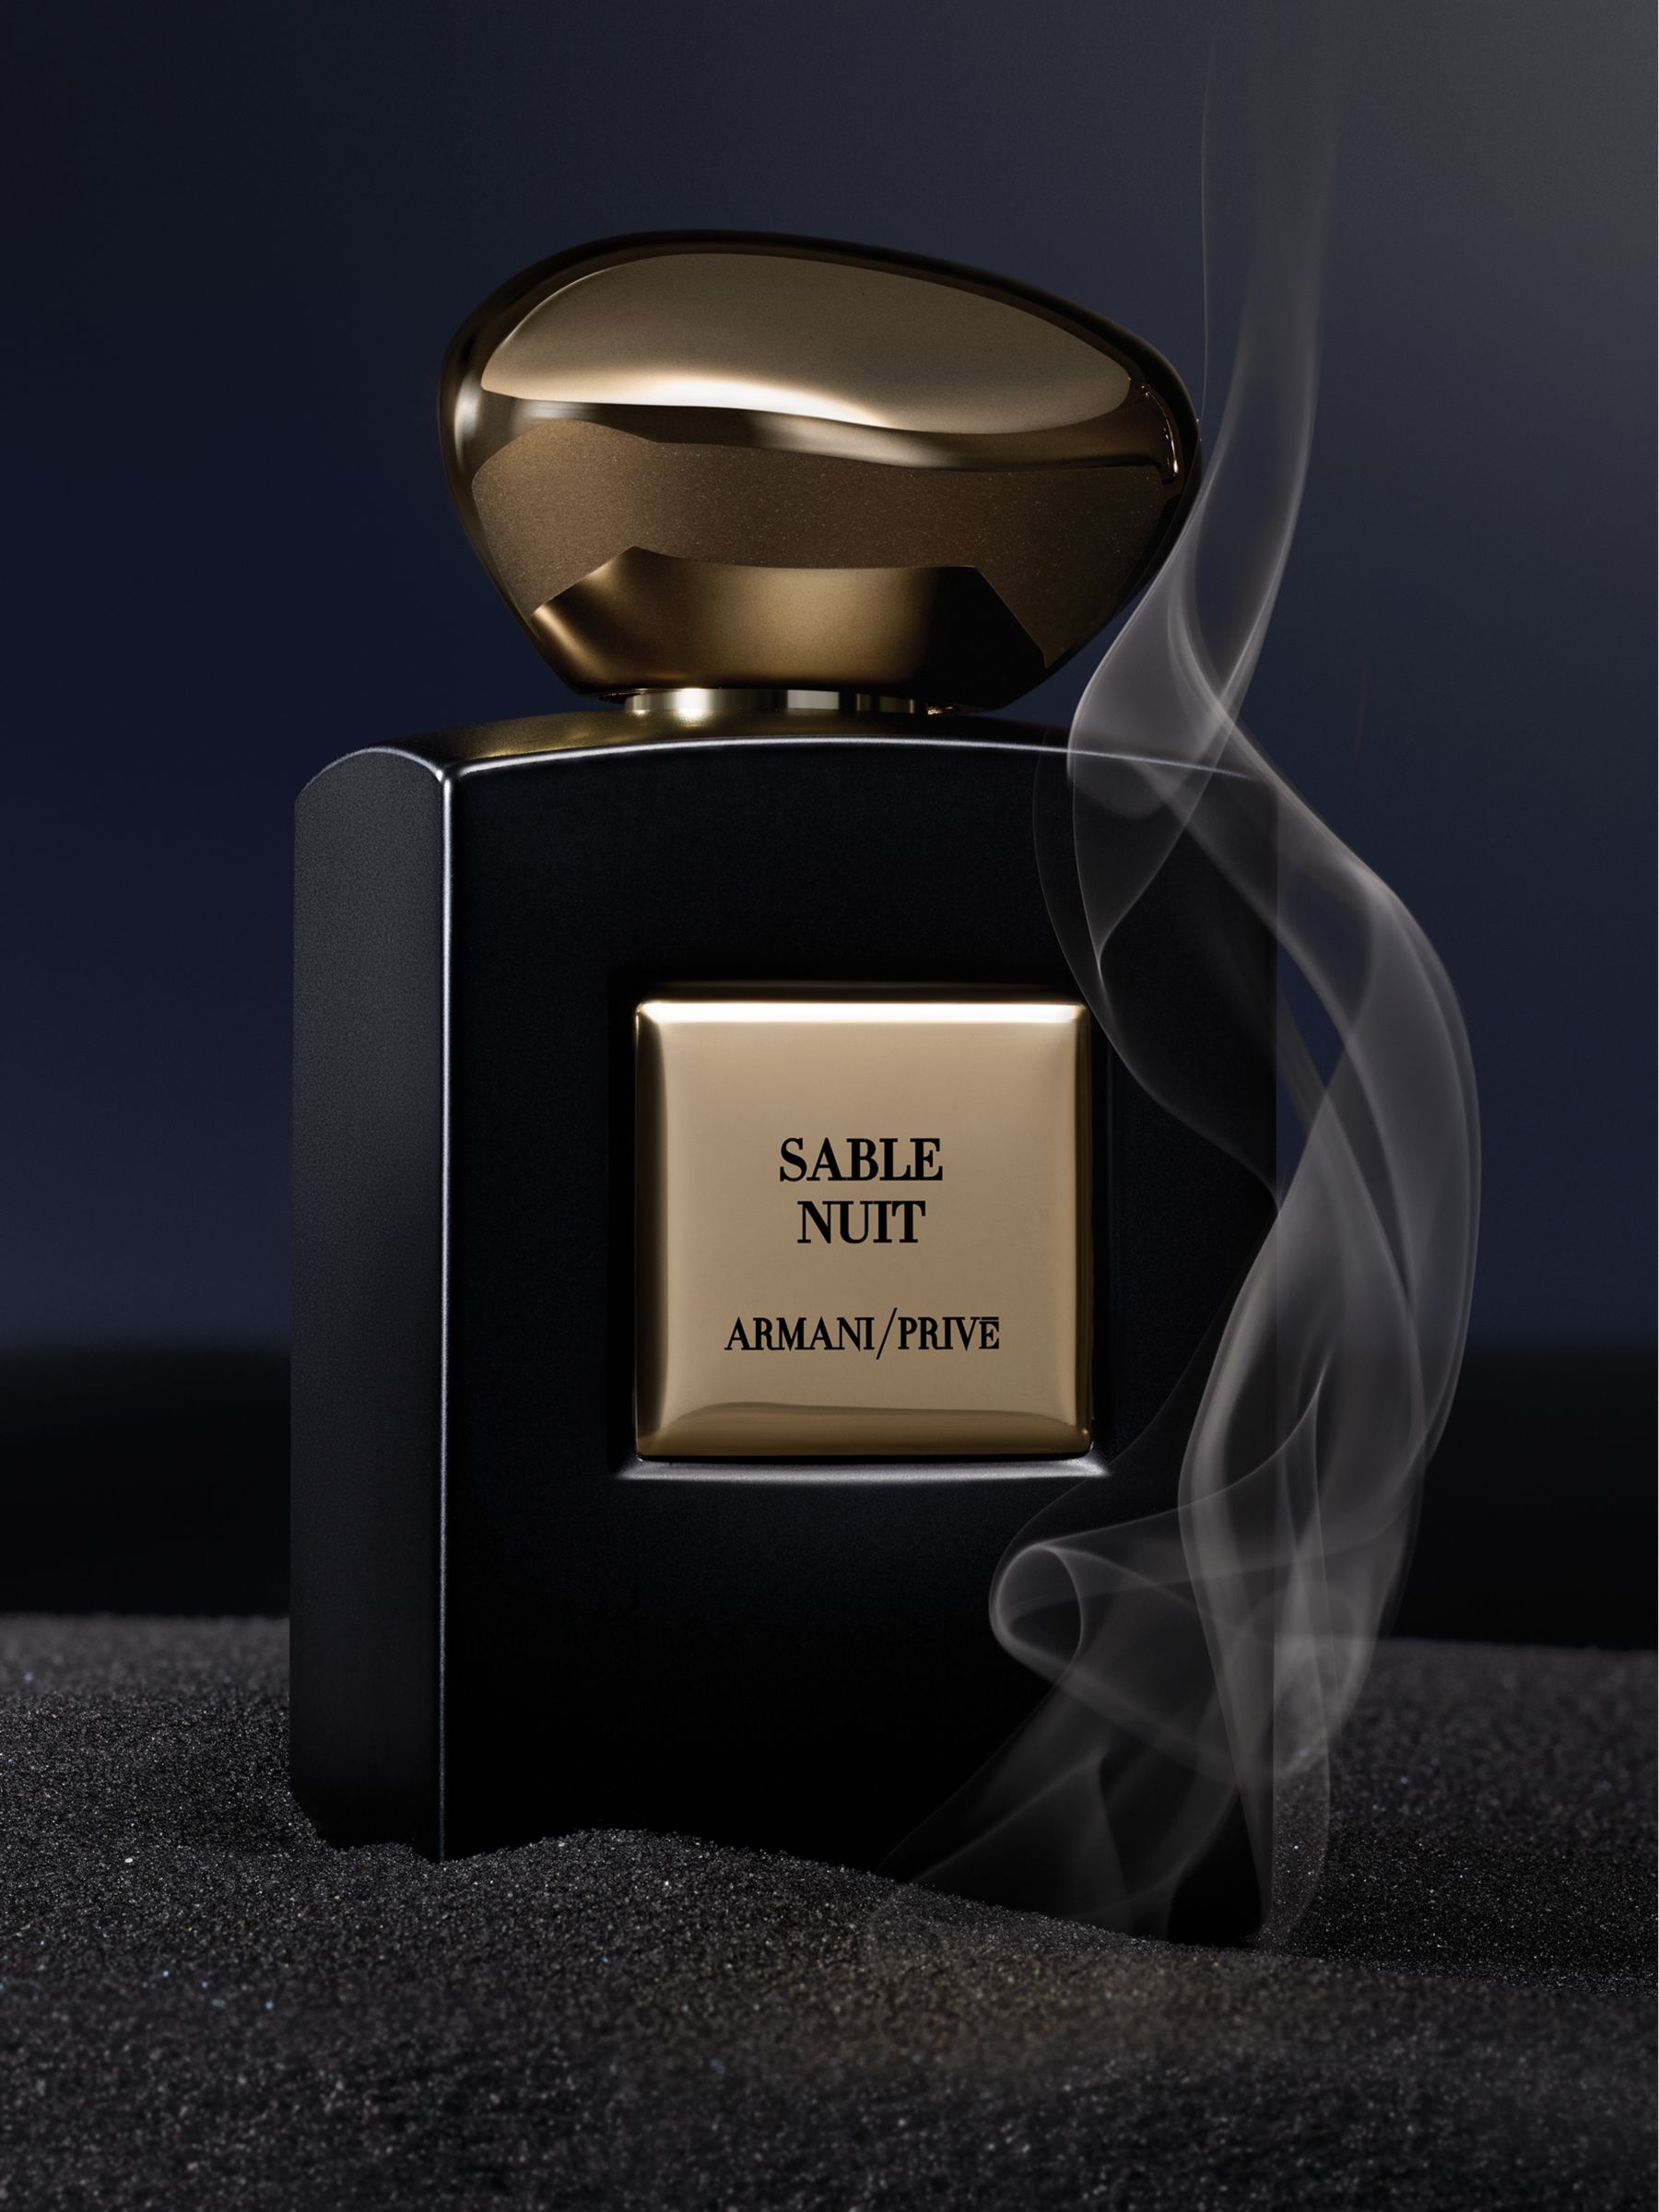 Giorgio Armani / Privé Sable Nuit Eau de Parfum Intense, 100ml at John  Lewis & Partners